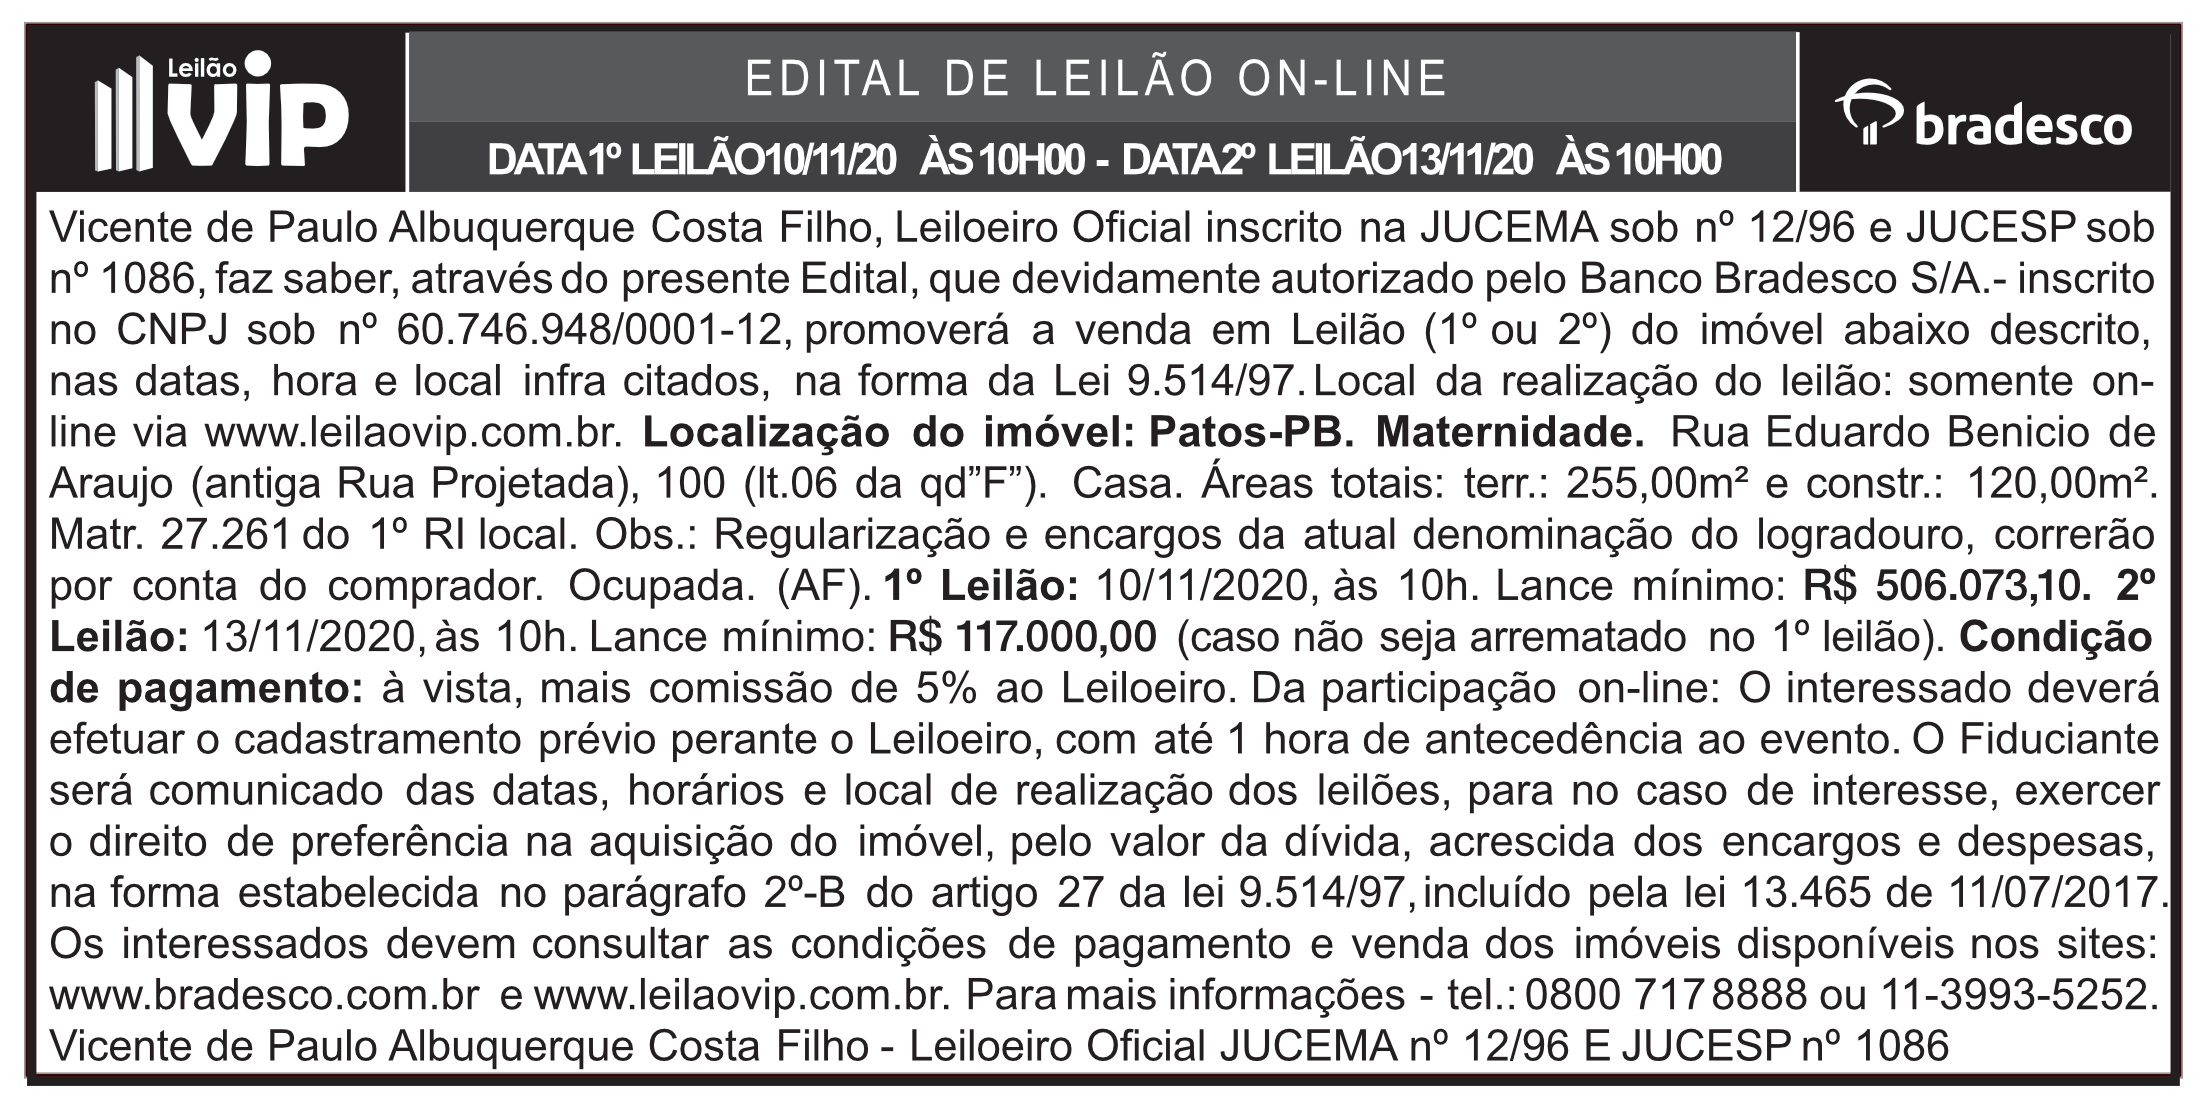 LEILÃO VIP – EDITAL DE LEILÃO ON-LINE